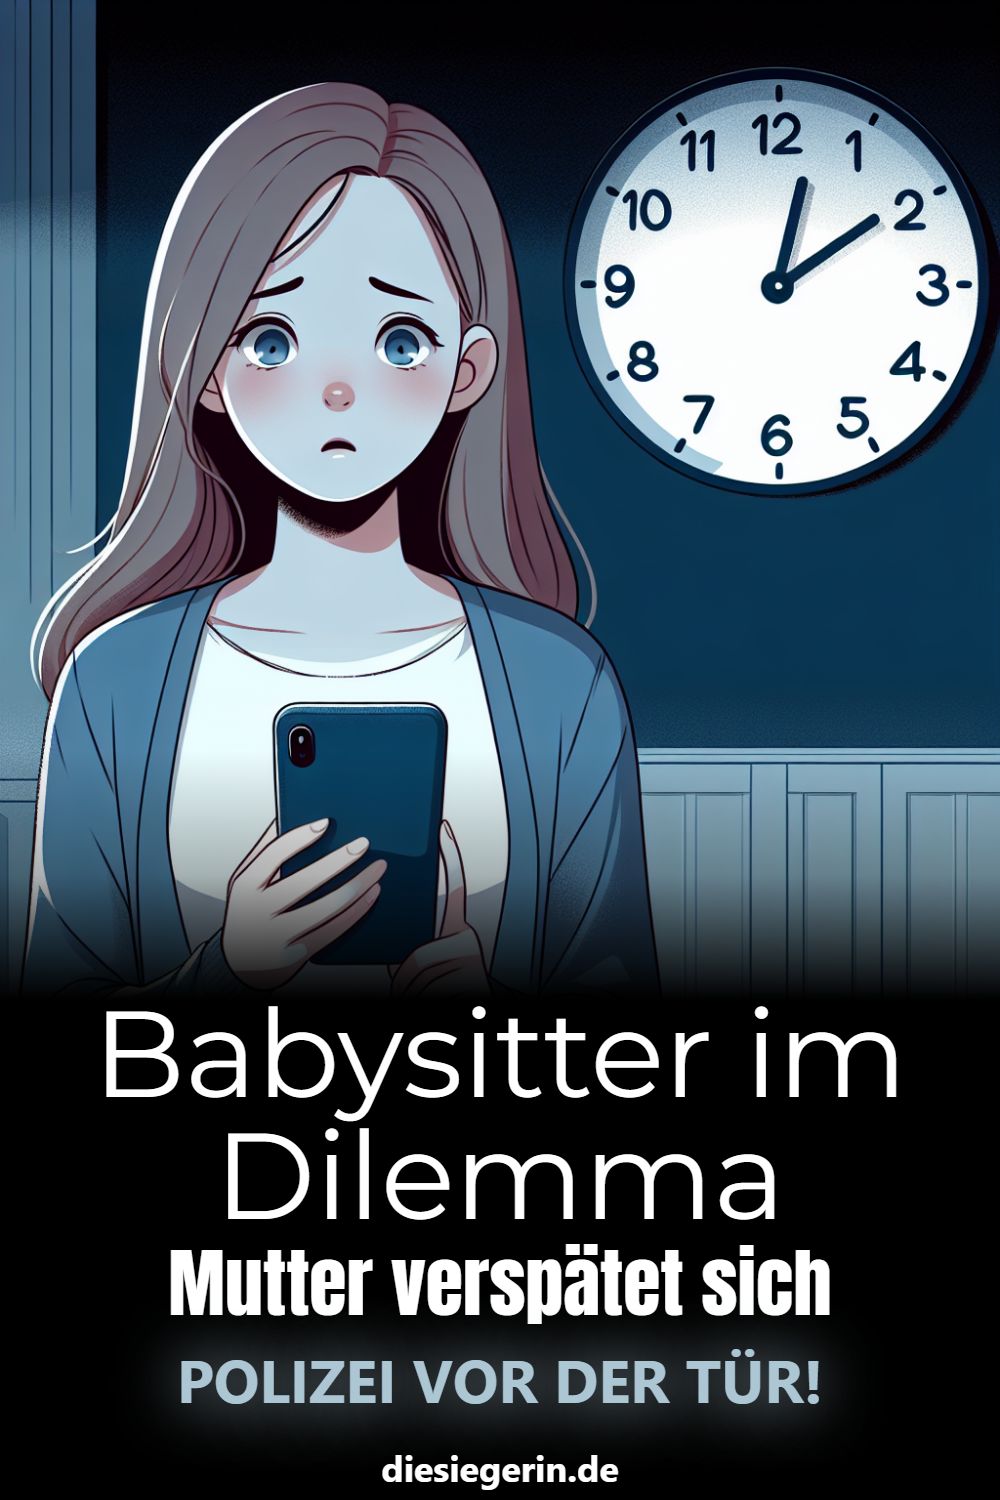 Babysitter im Dilemma Mutter verspätet sich POLIZEI VOR DER TÜR!